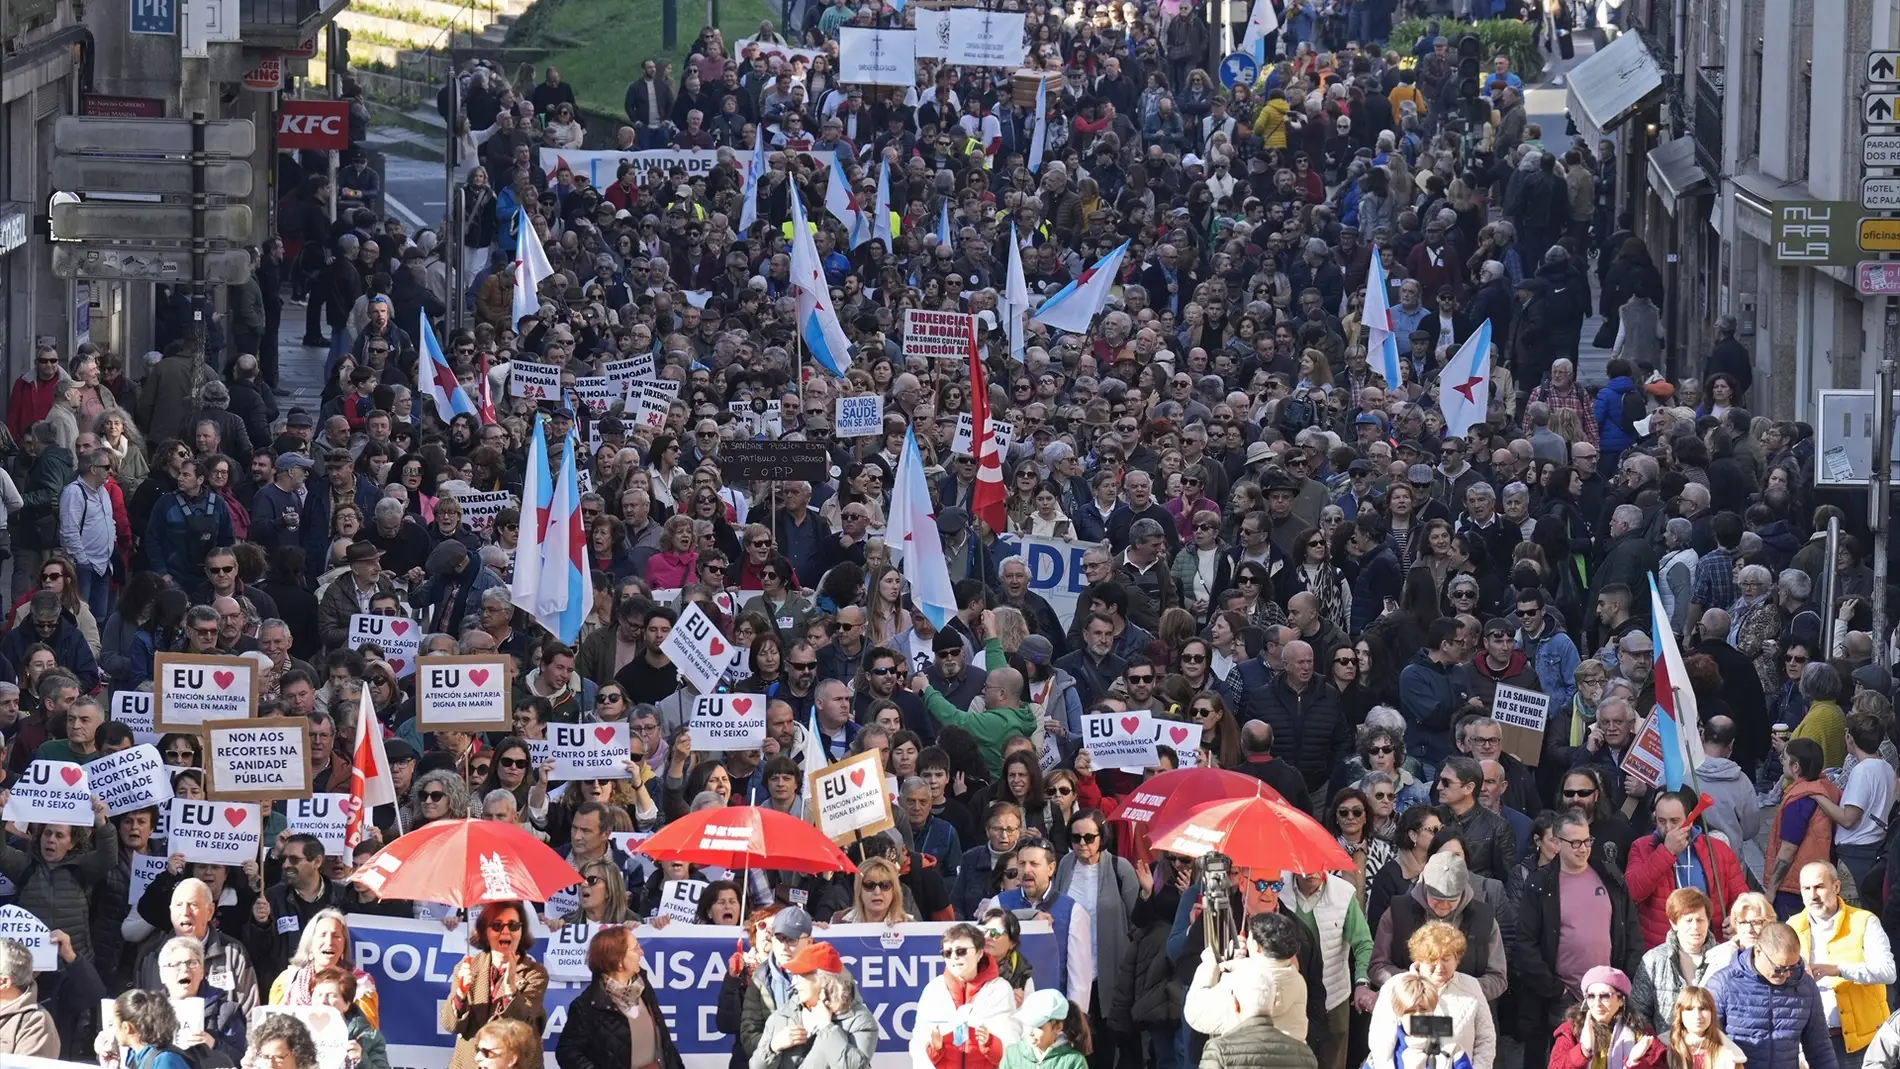 Masiva manifestación en Galicia en defensa de la sanidad pública: "Rueda, atiende, la sanidad no se vende"